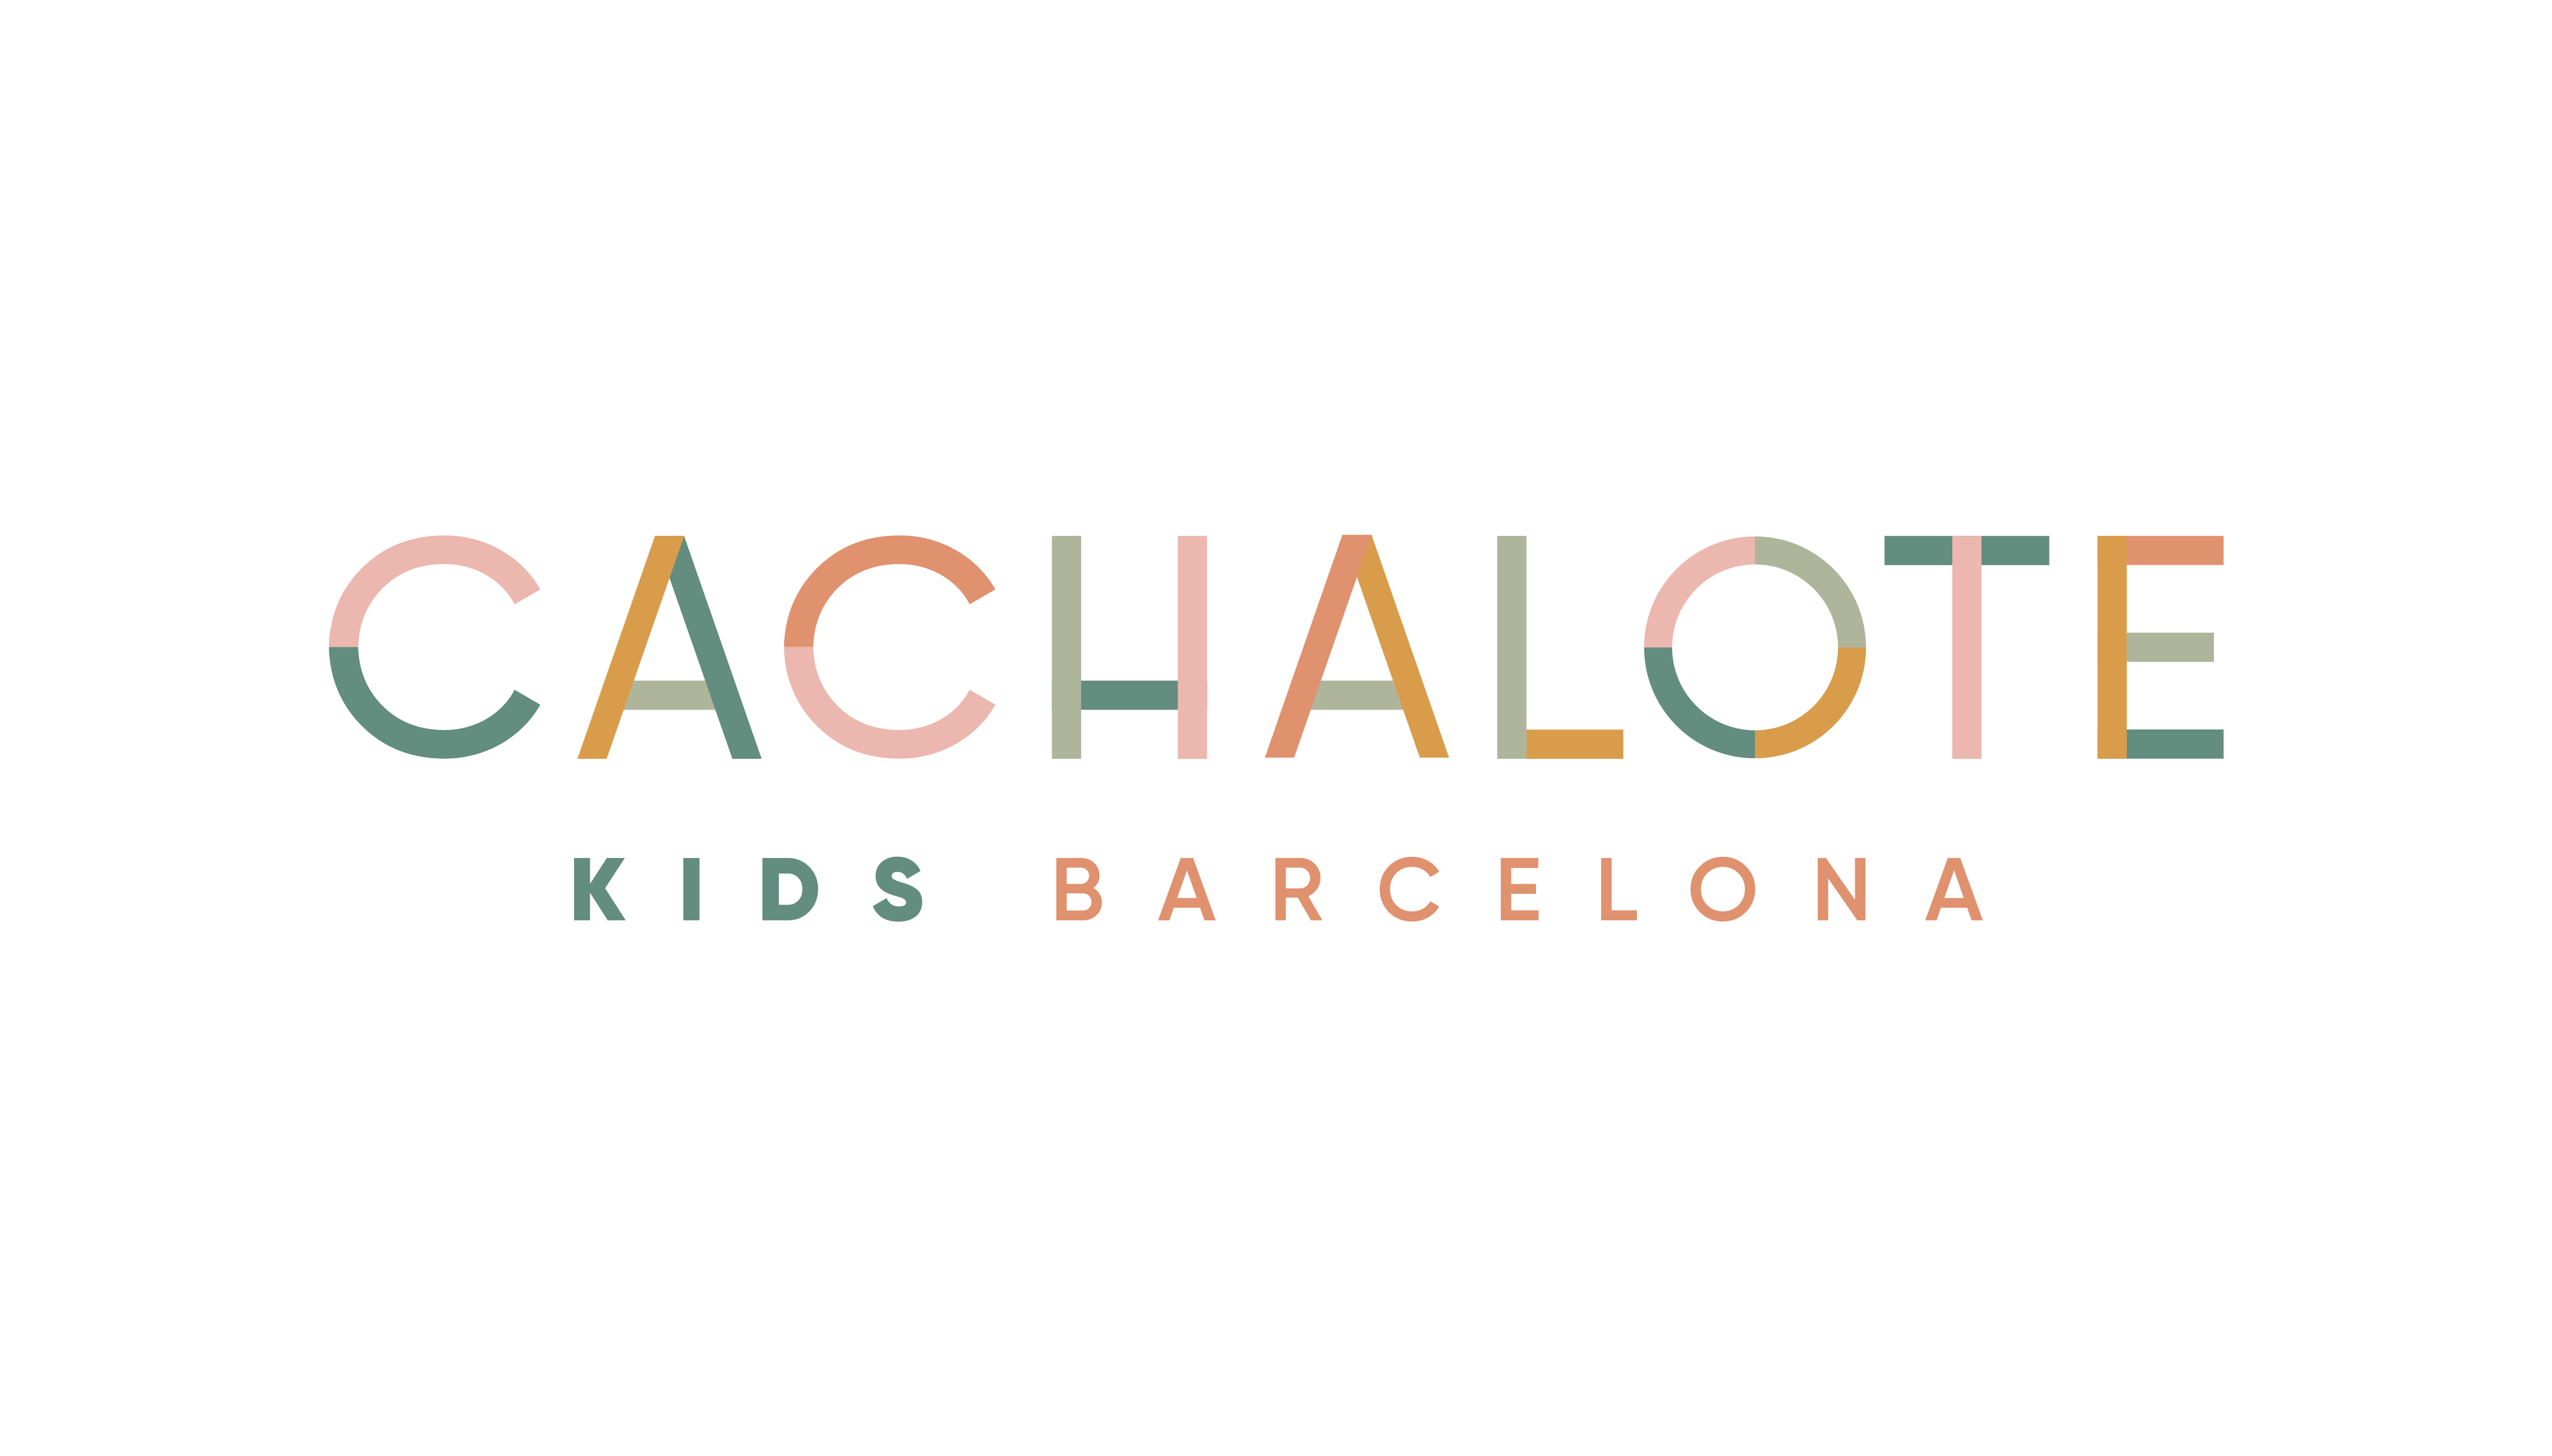 Cachalote Kids